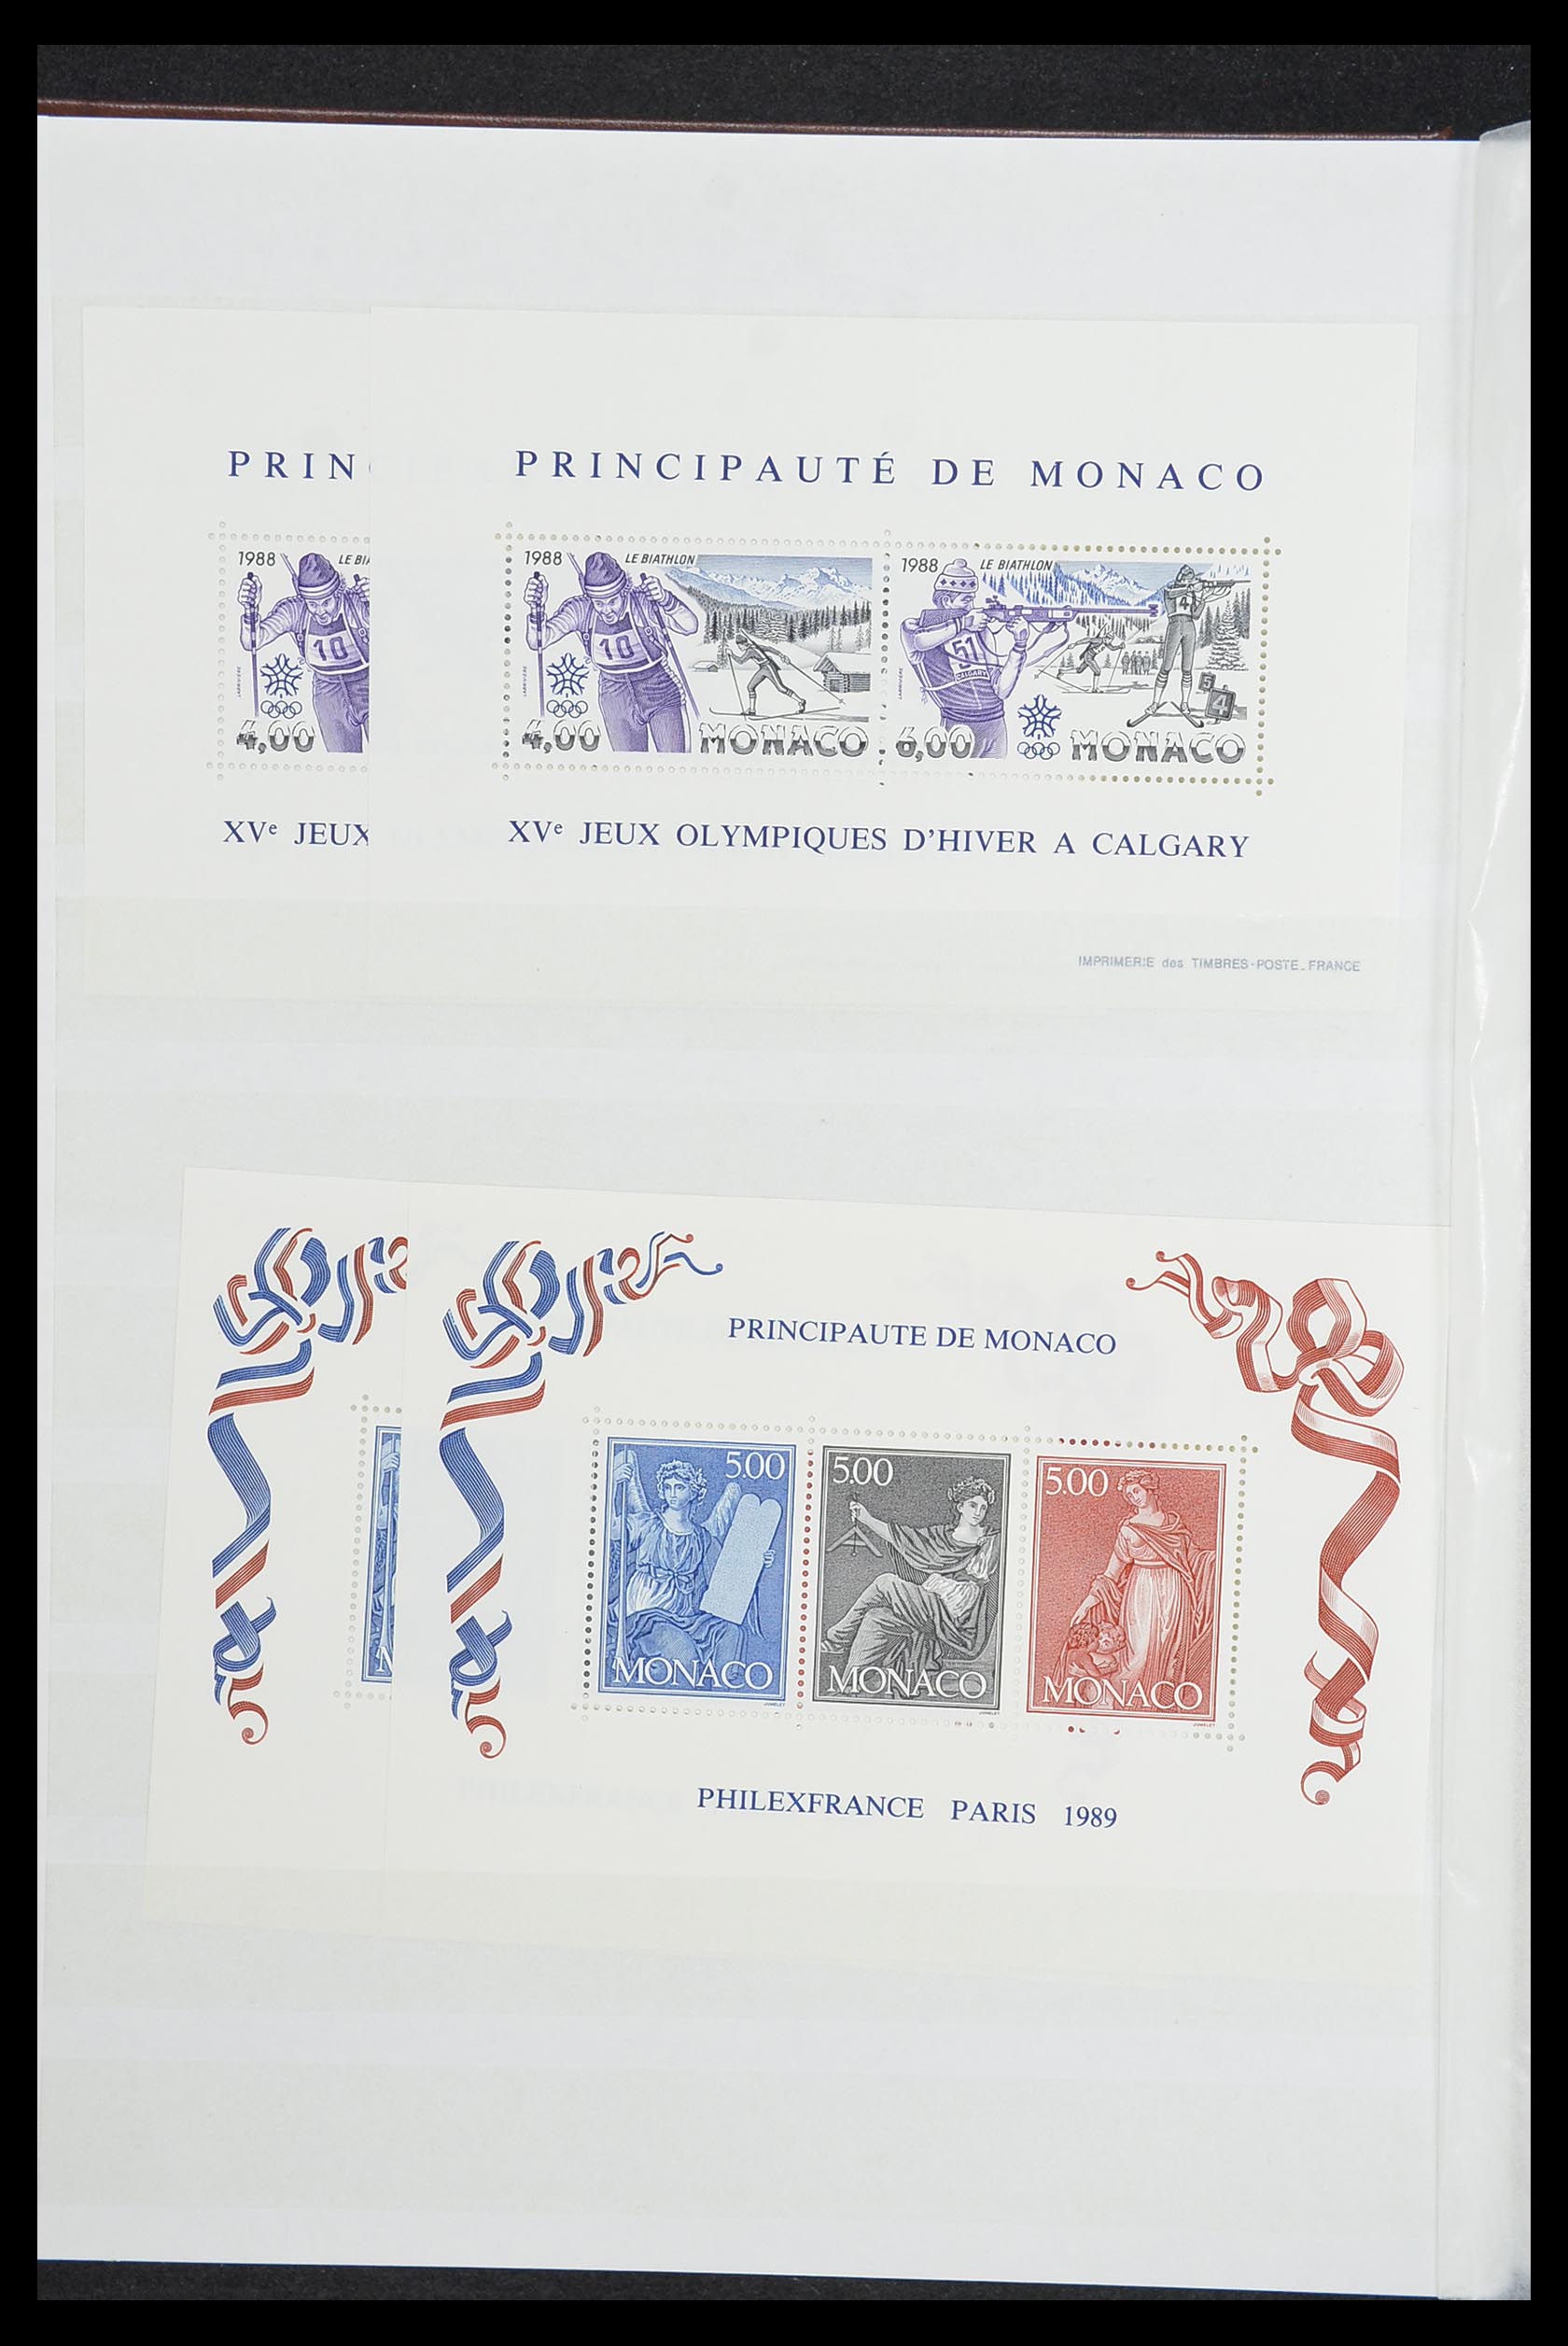 33833 010 - Stamp collection 33833 Monaco souvenir sheets 1979-2015.